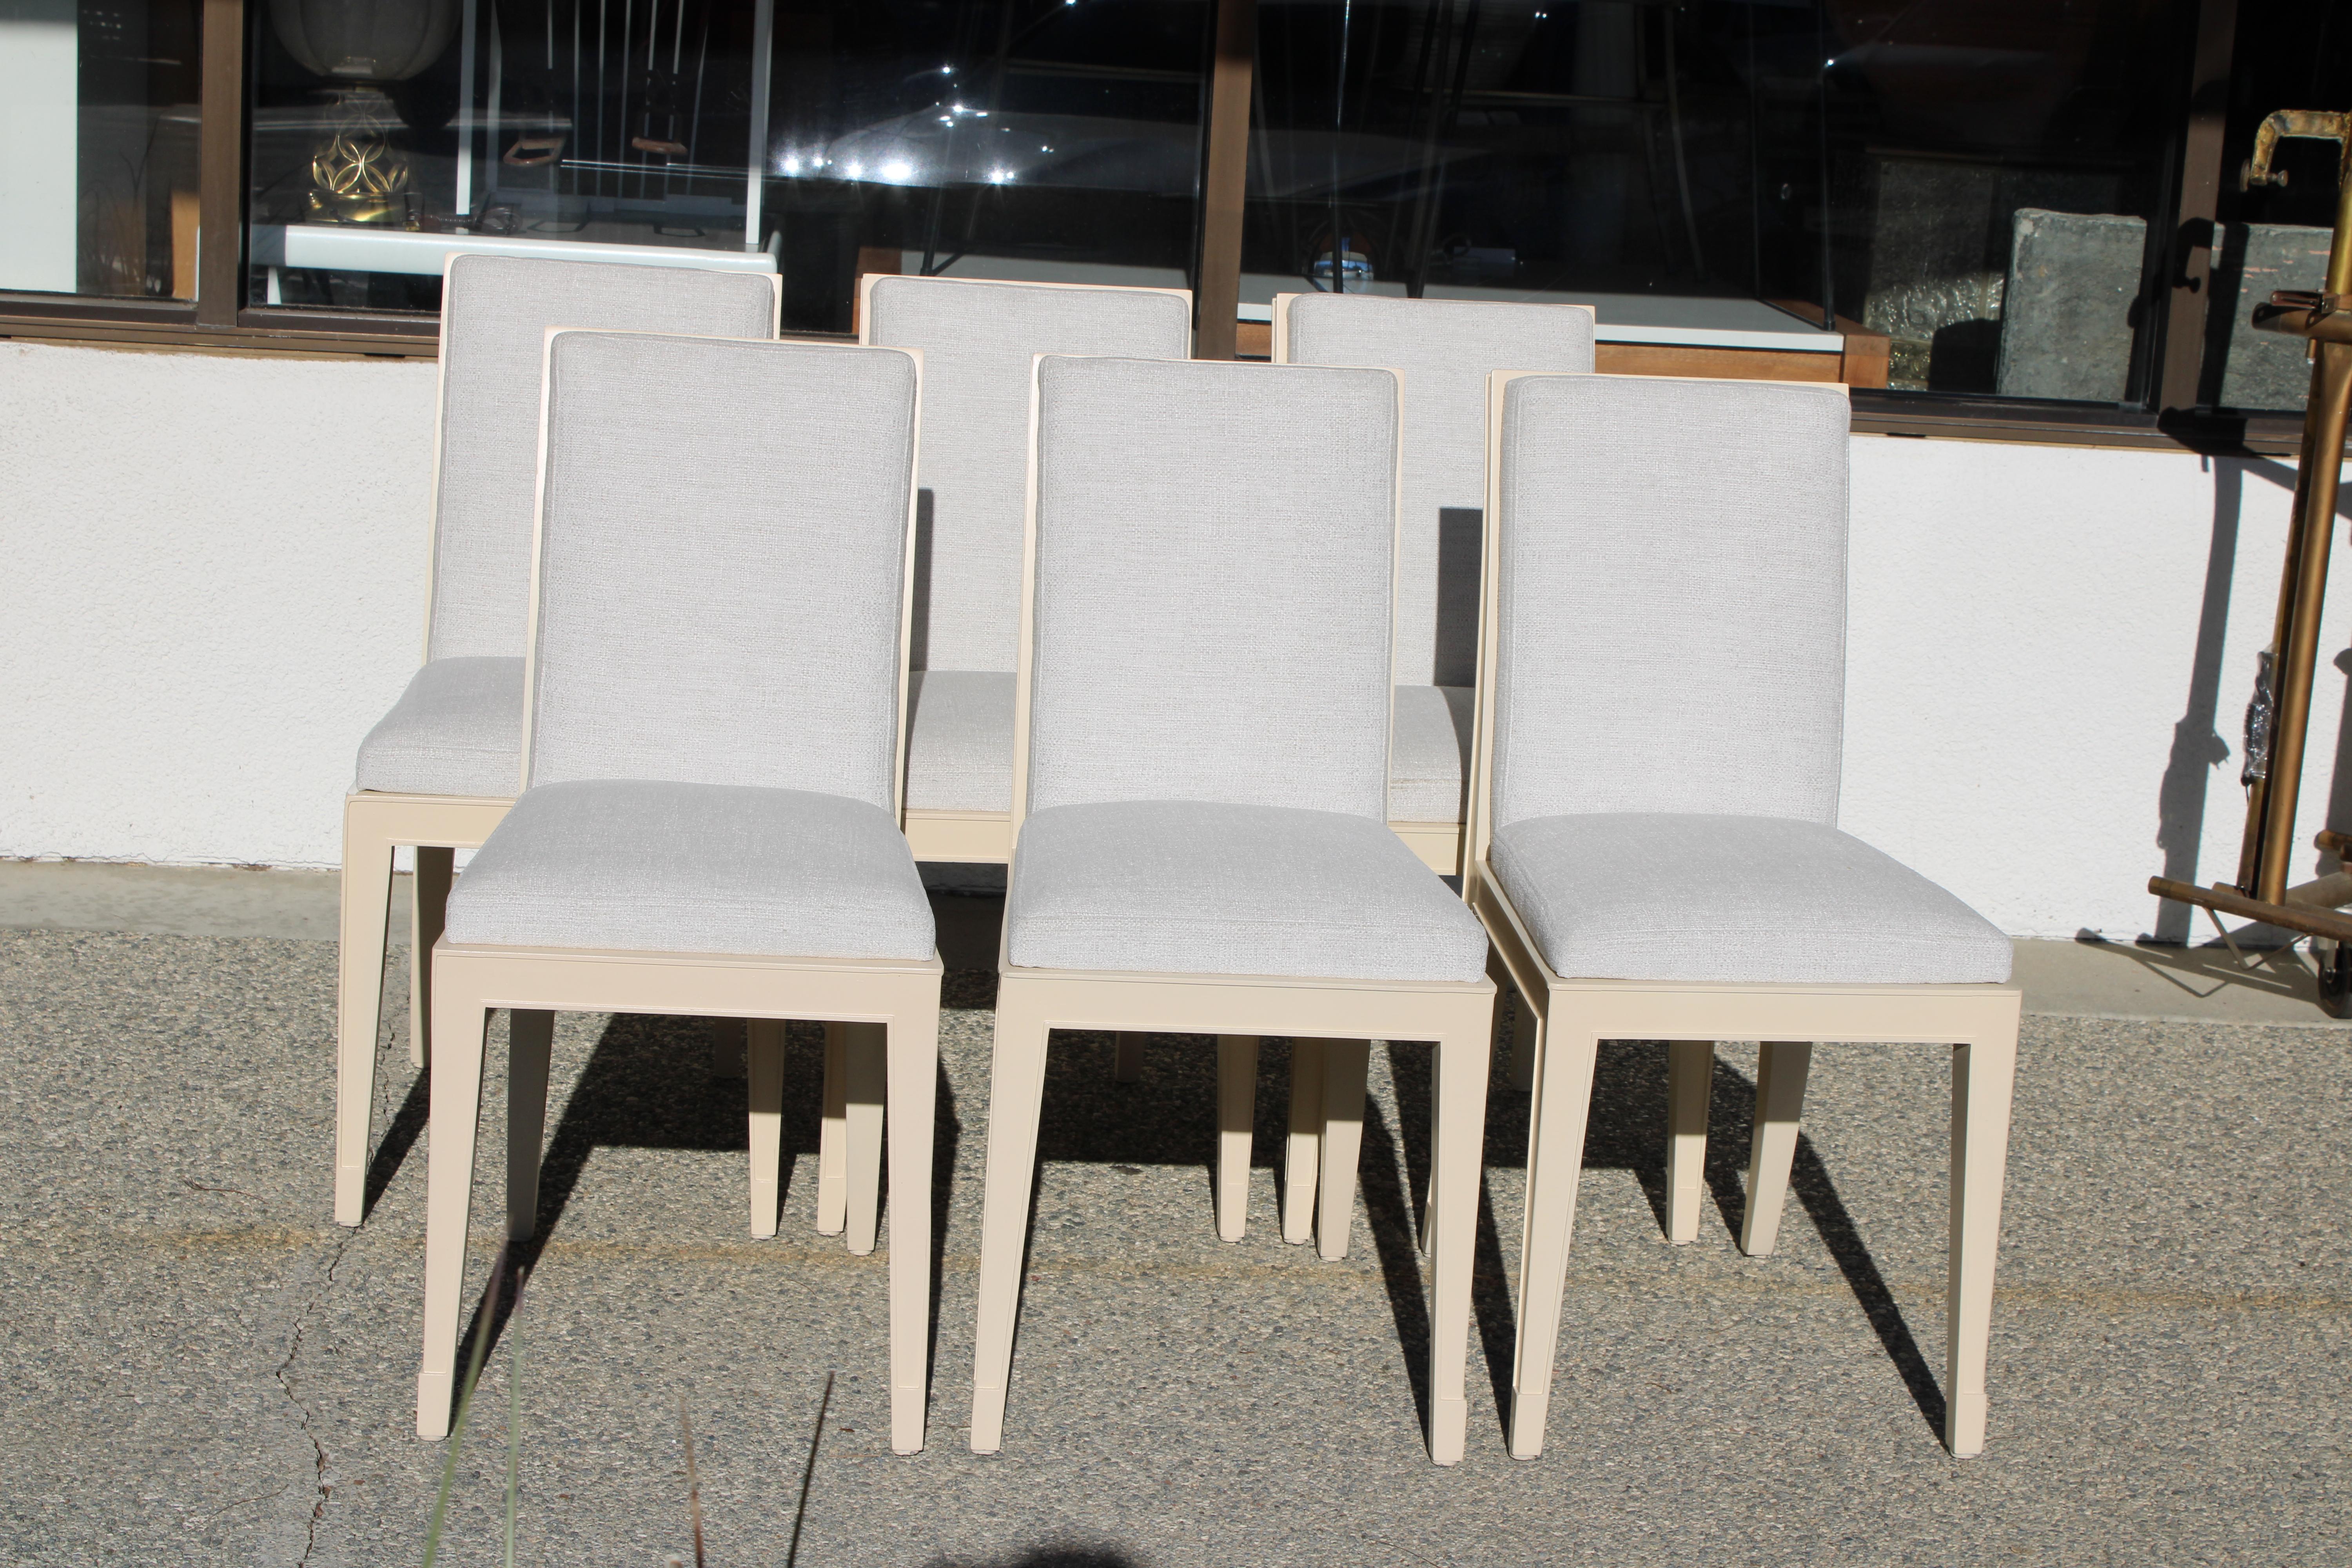 Sechs zierliche Esszimmerstühle, entworfen von Philippe Starck für das Clift Royal Sonesta Hotel, San Francisco, CA., um 2000.  Die Stühle wurden professionell aufgearbeitet und neu gepolstert. Die Stühle sind 15,5